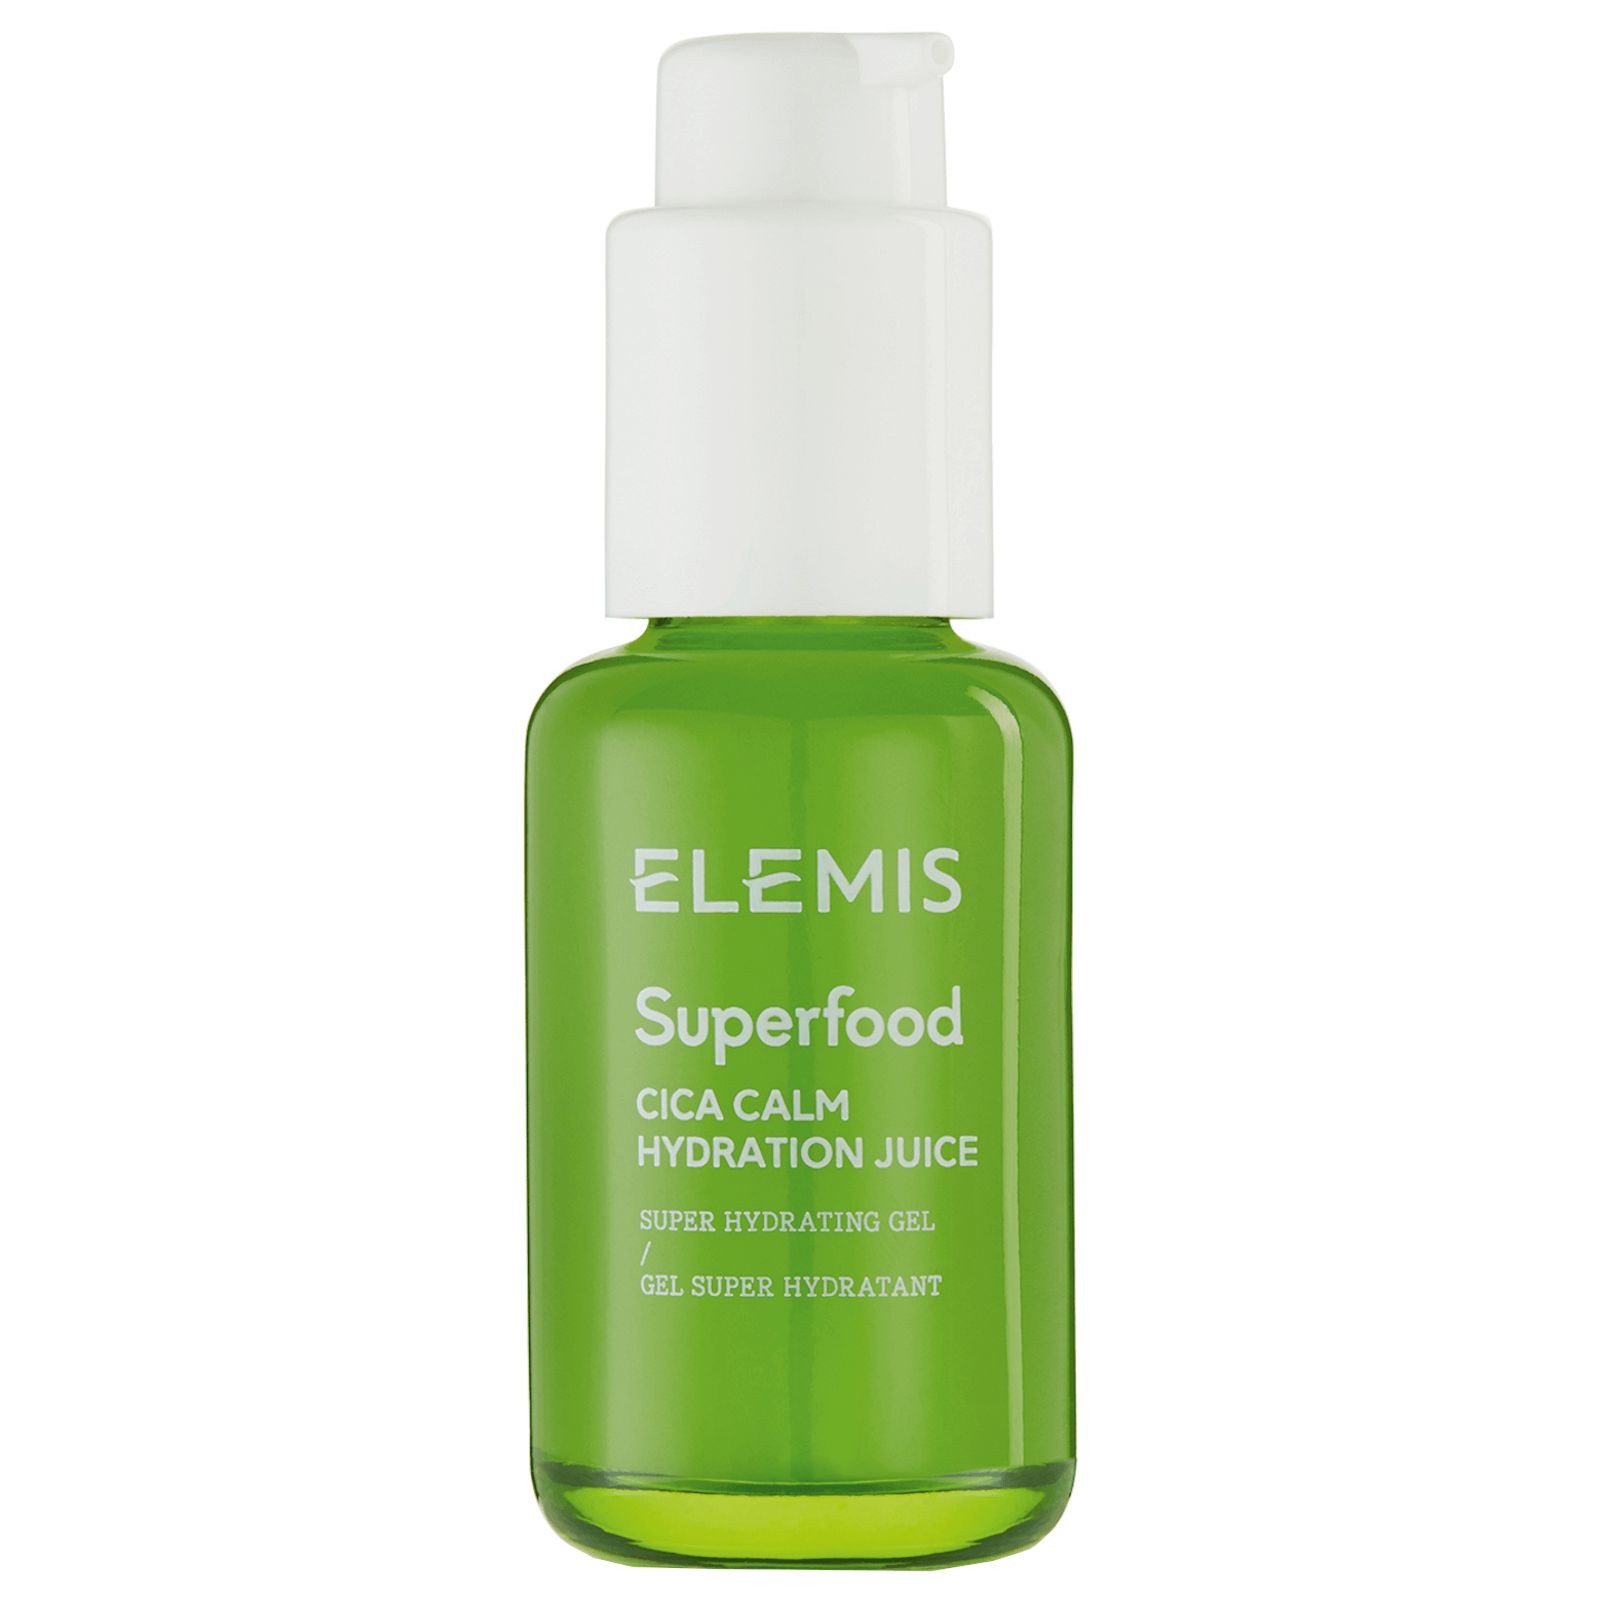 Elemis Superfood Cica Calm Hydration Juice | Skinstore